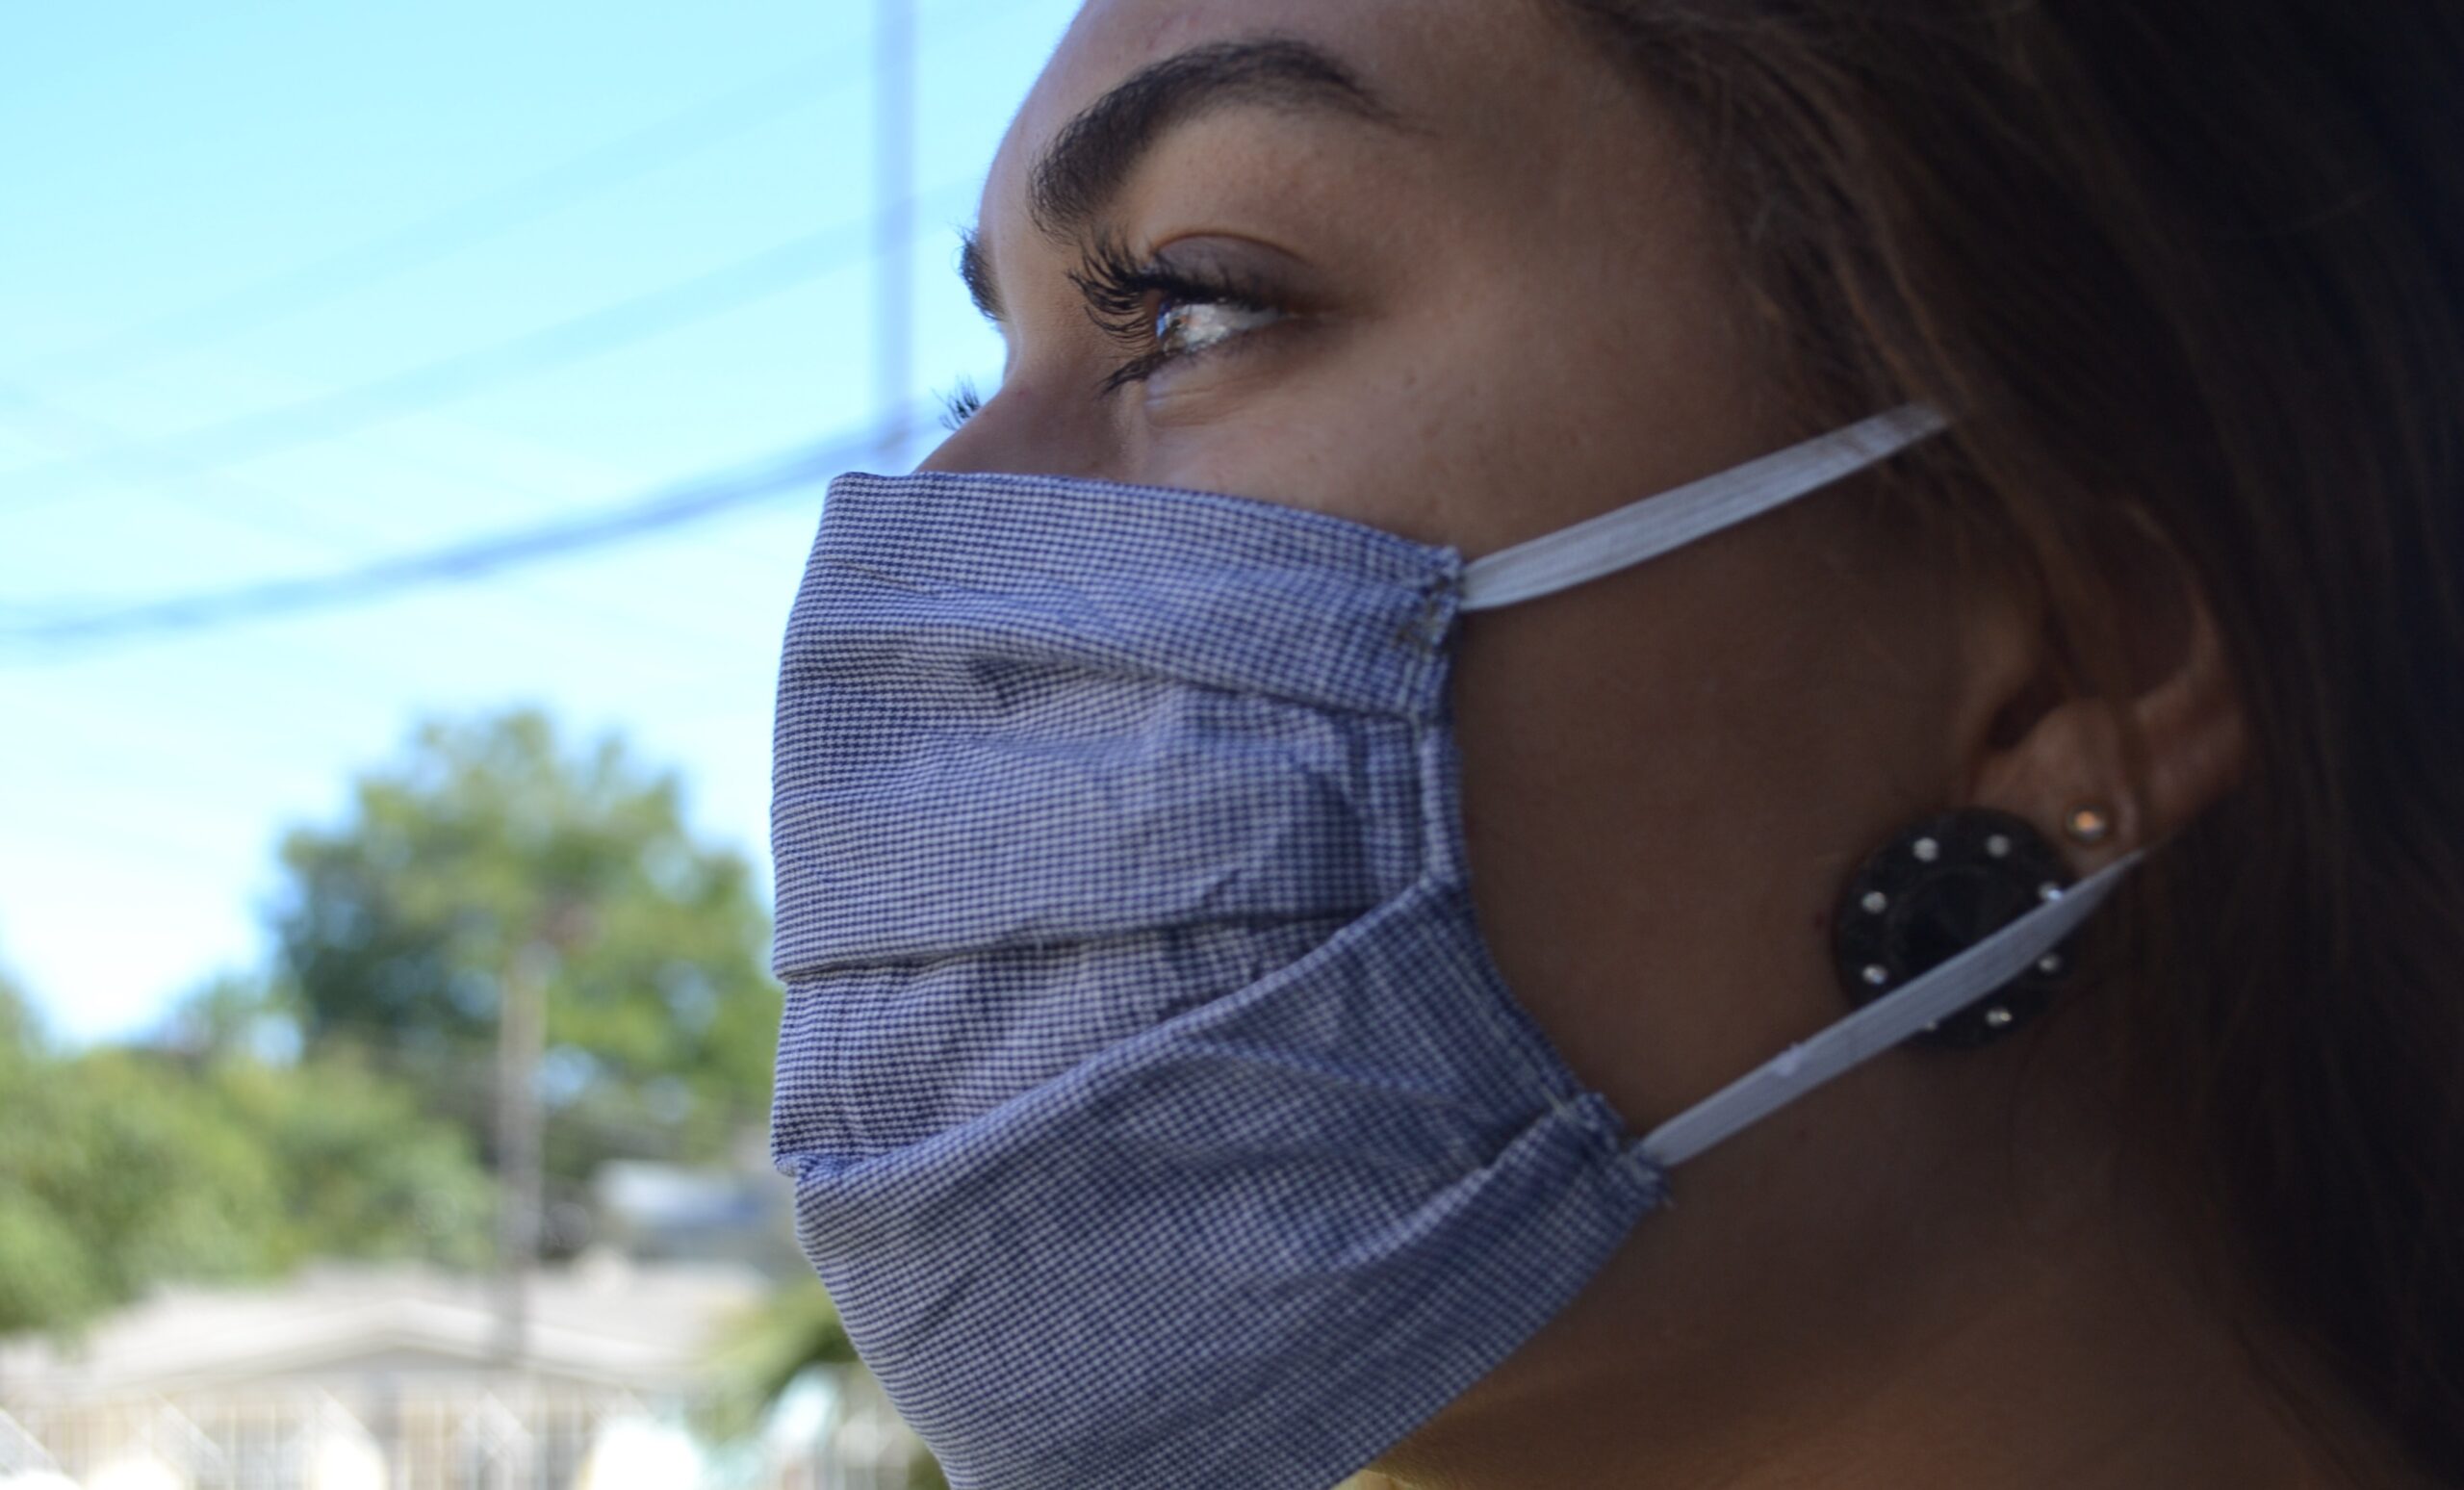 Descumprimento do uso de máscara gera multa de até R$ 353 em Floriano